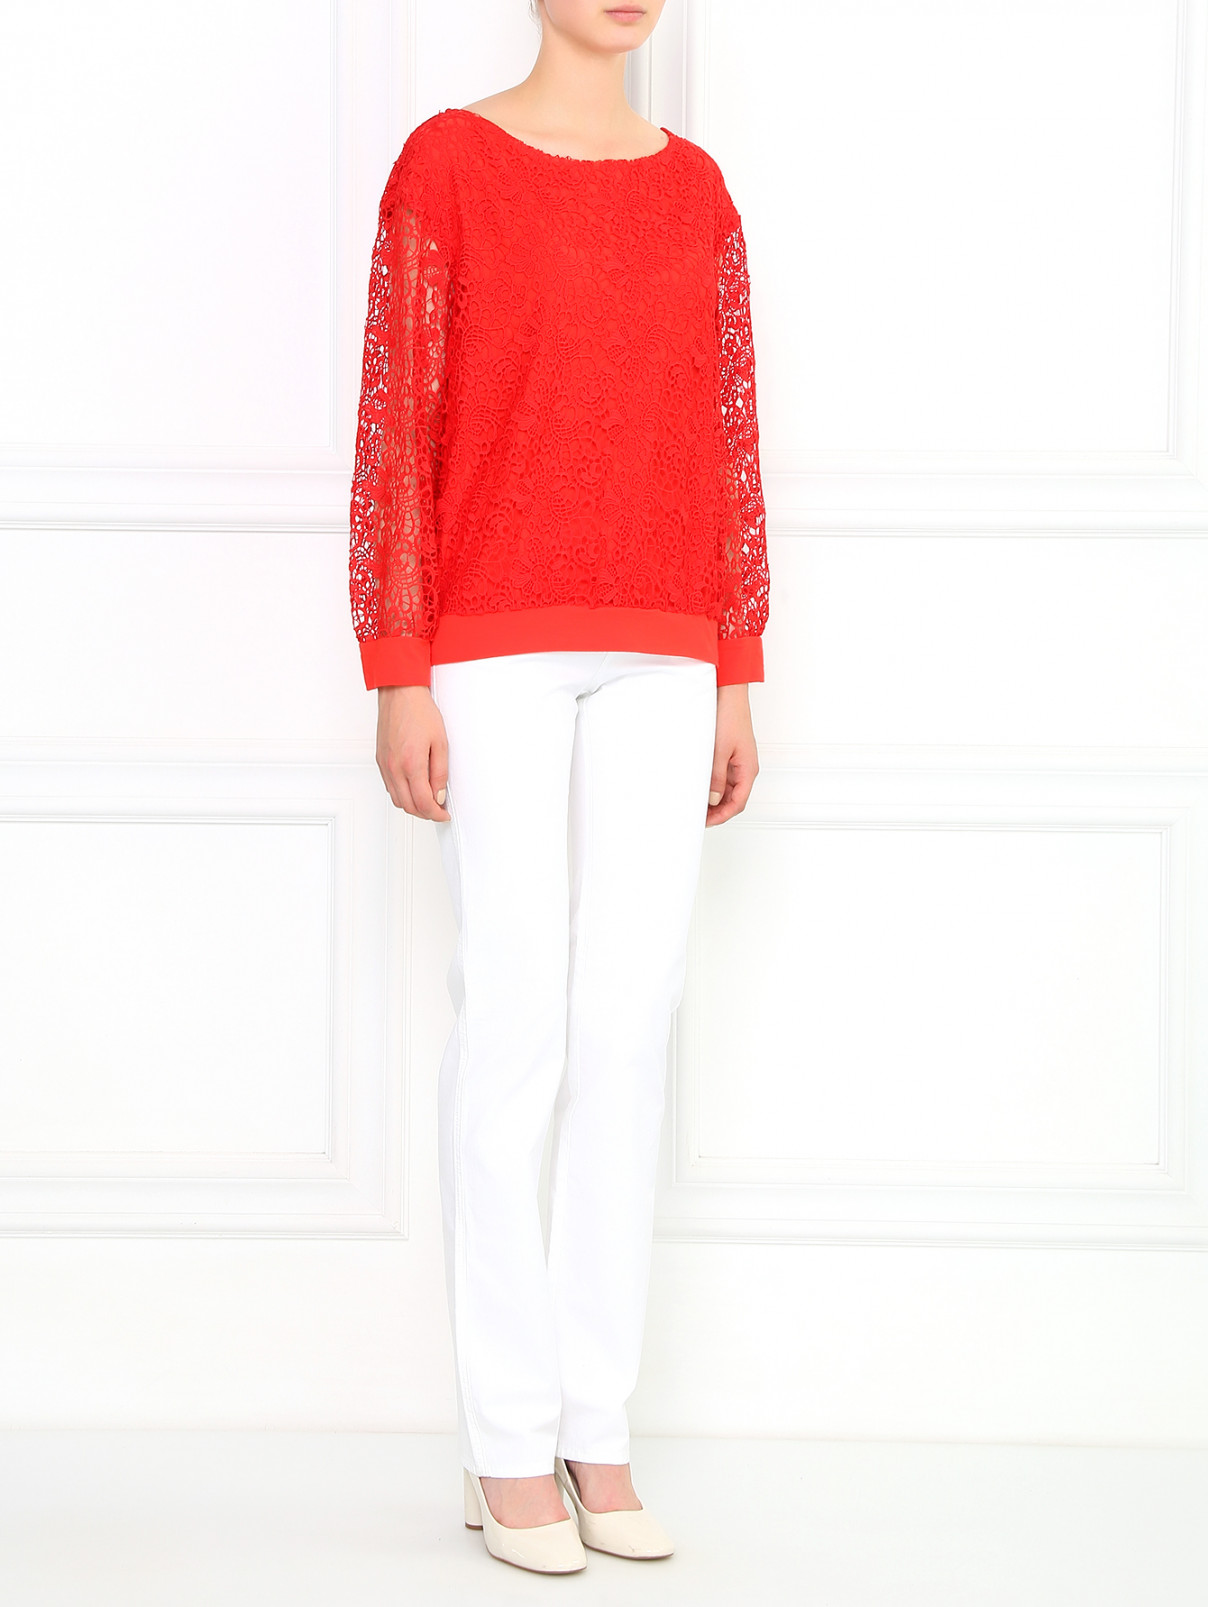 Блуза с кружевной вставкой Alice+Olivia  –  Модель Общий вид  – Цвет:  Красный